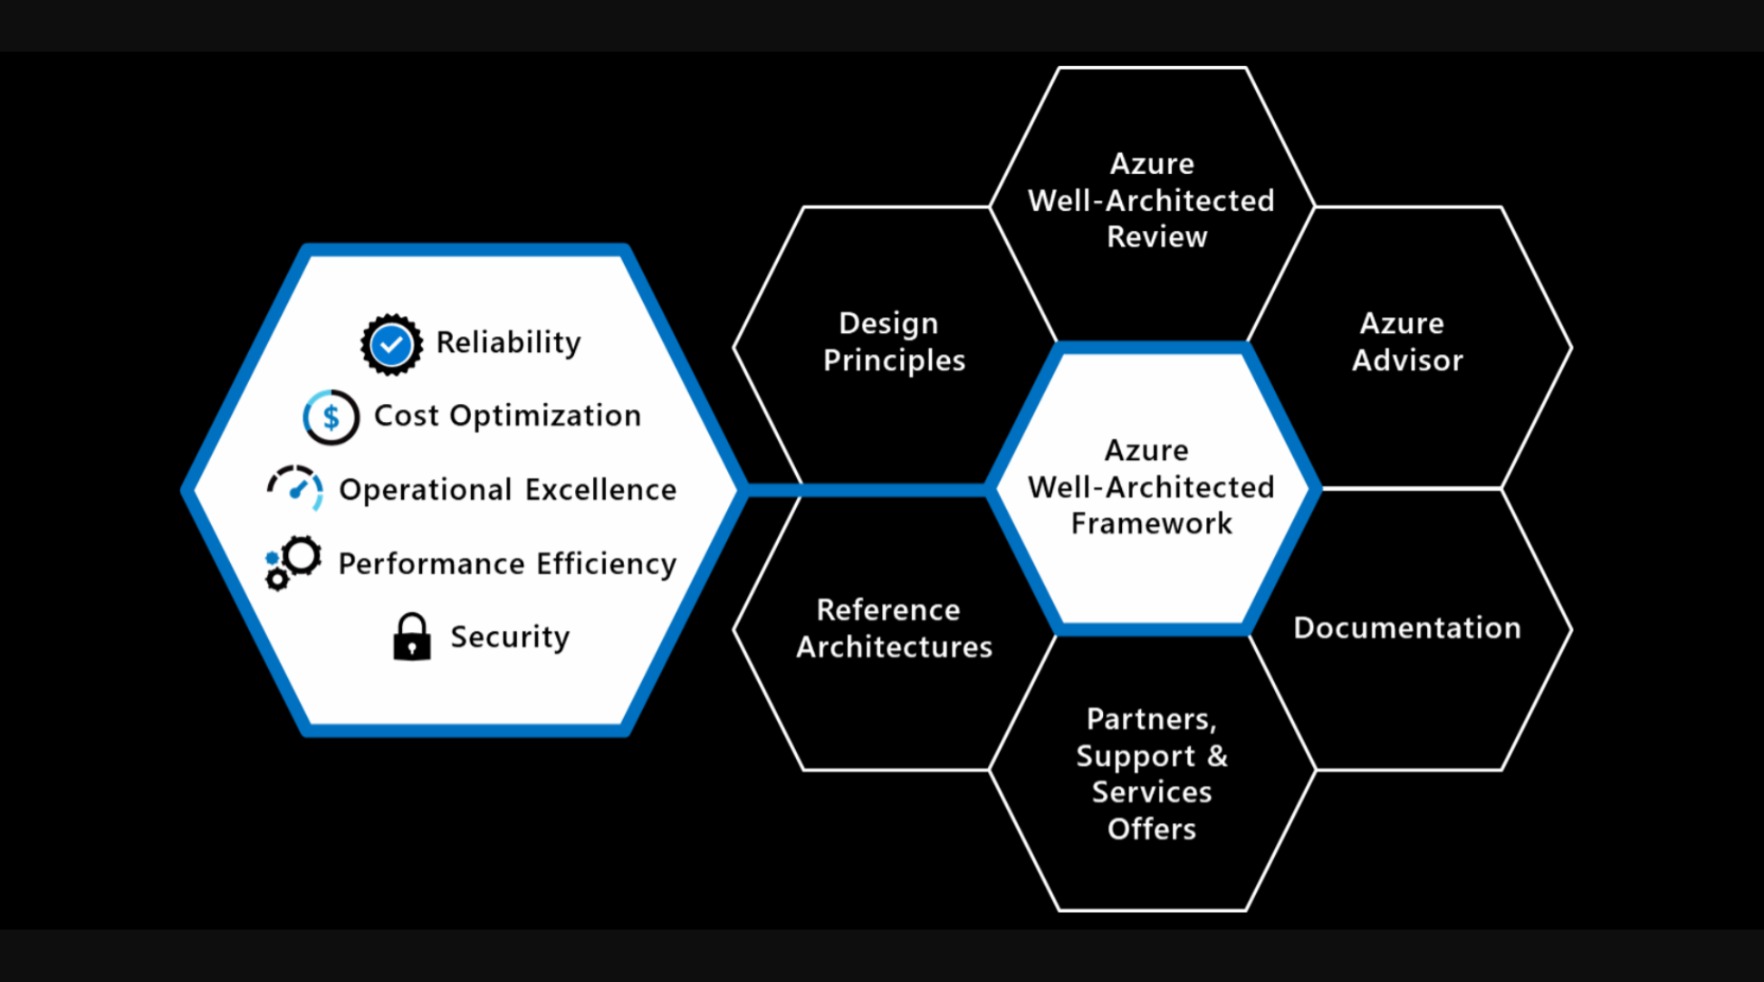 Diagrama del marco de buena arquitectura y los elementos de apoyo.